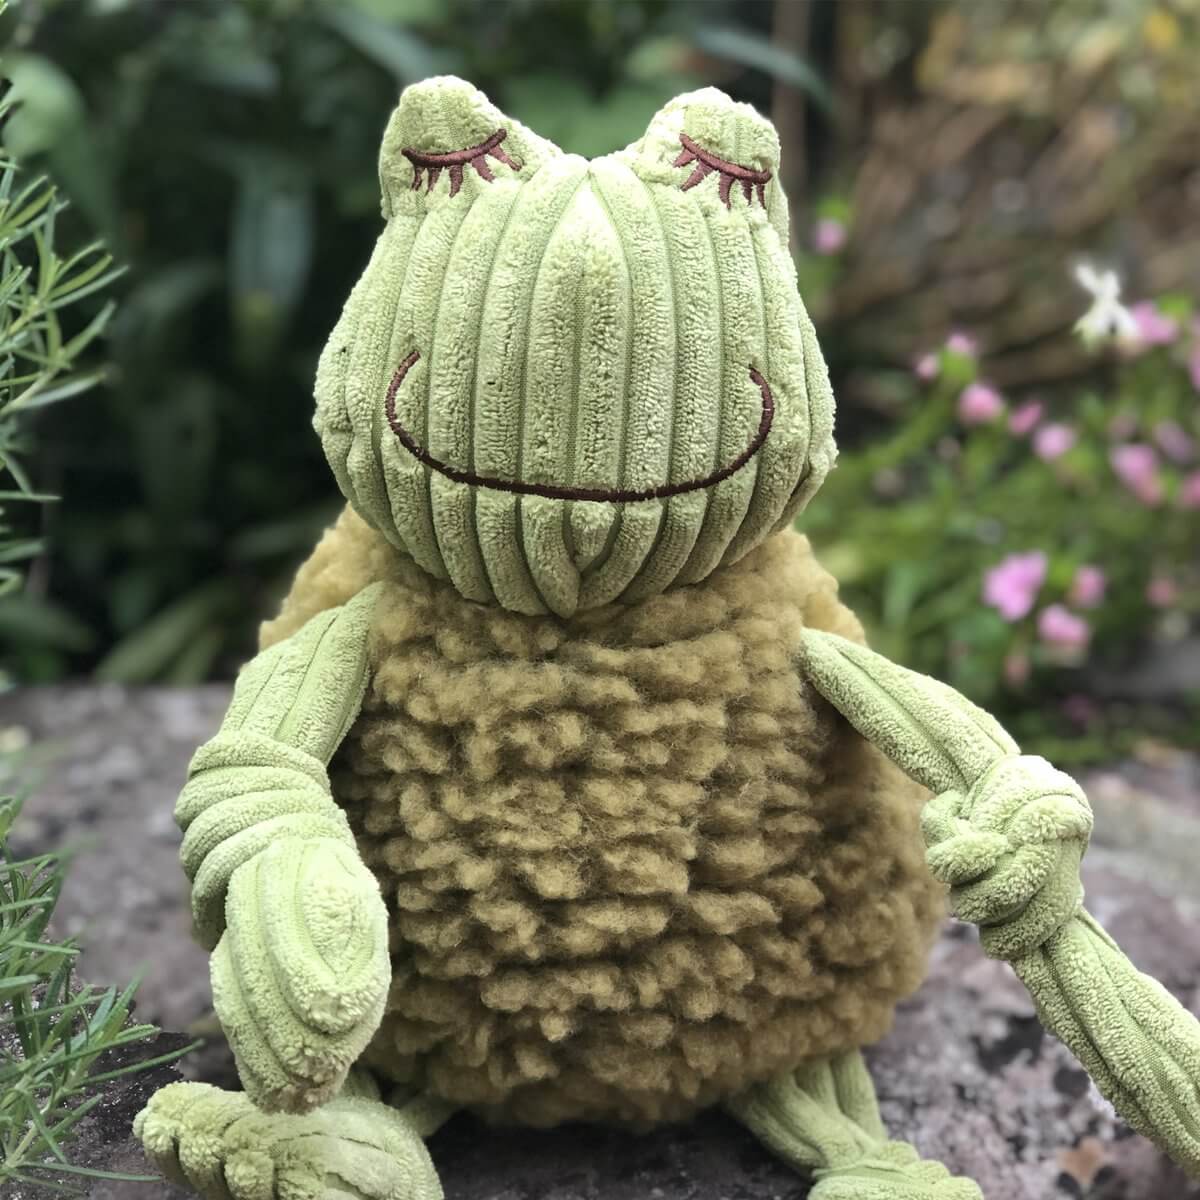 Flufferknottie frog outside